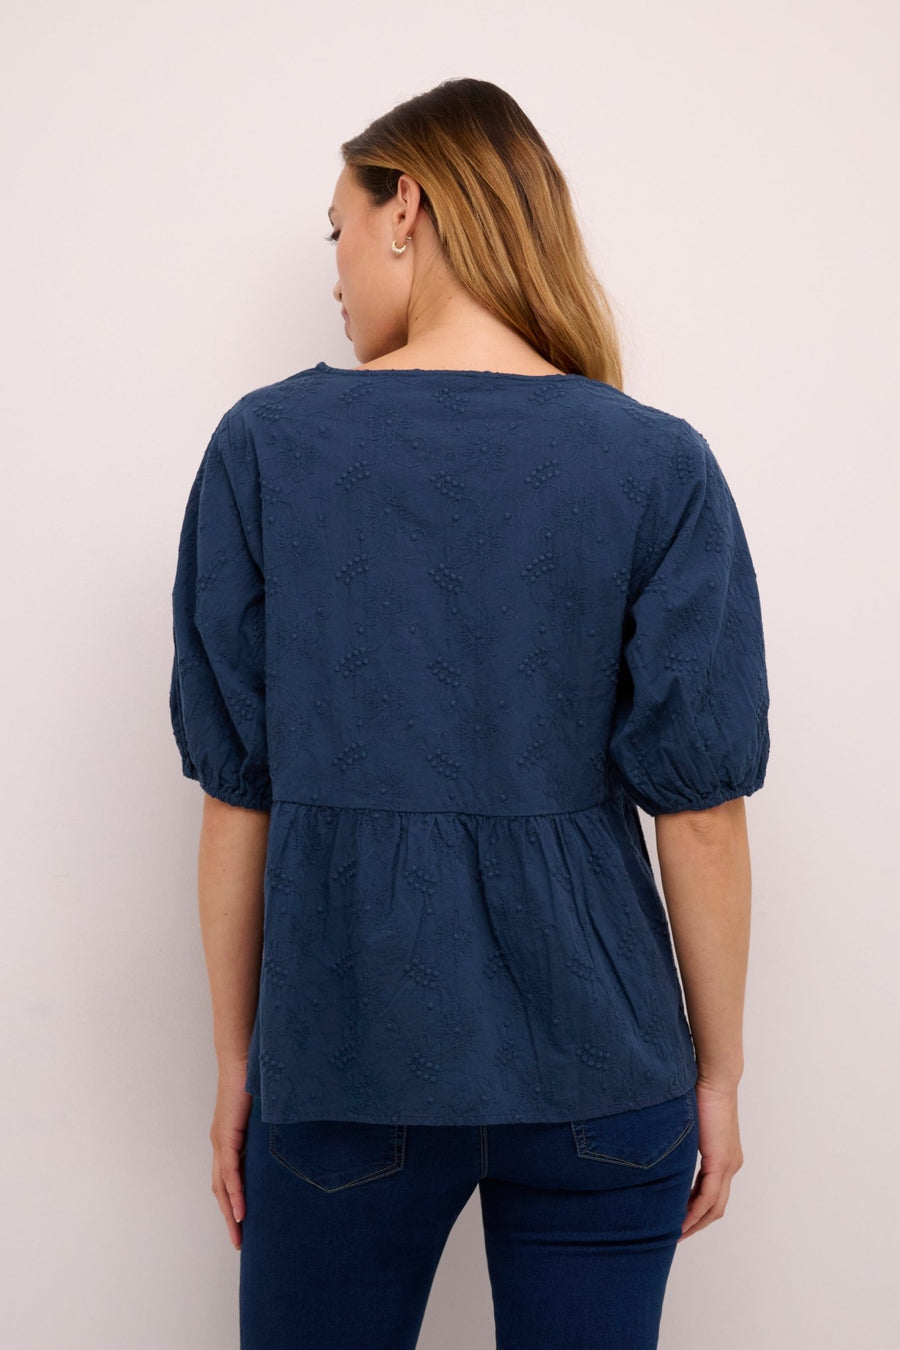 Eve blouse by Culture - dress blues - Blue Sky Fashions & Lingerie